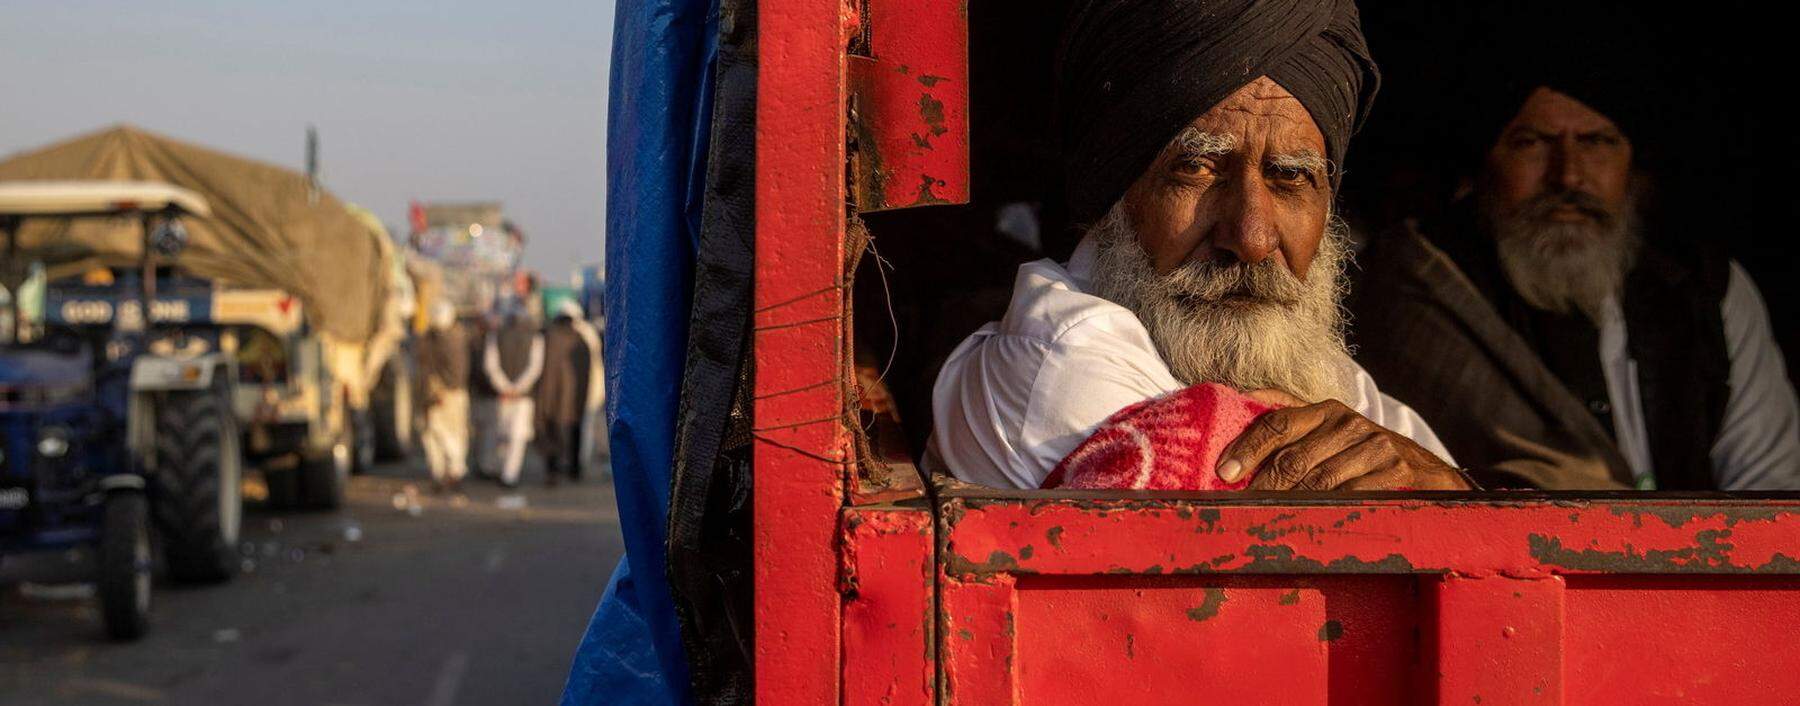 Zehntausende Bauern aus vielen Teilen Indiens haben vor den Toren Neu-Delhis Protestcamps errichtet.